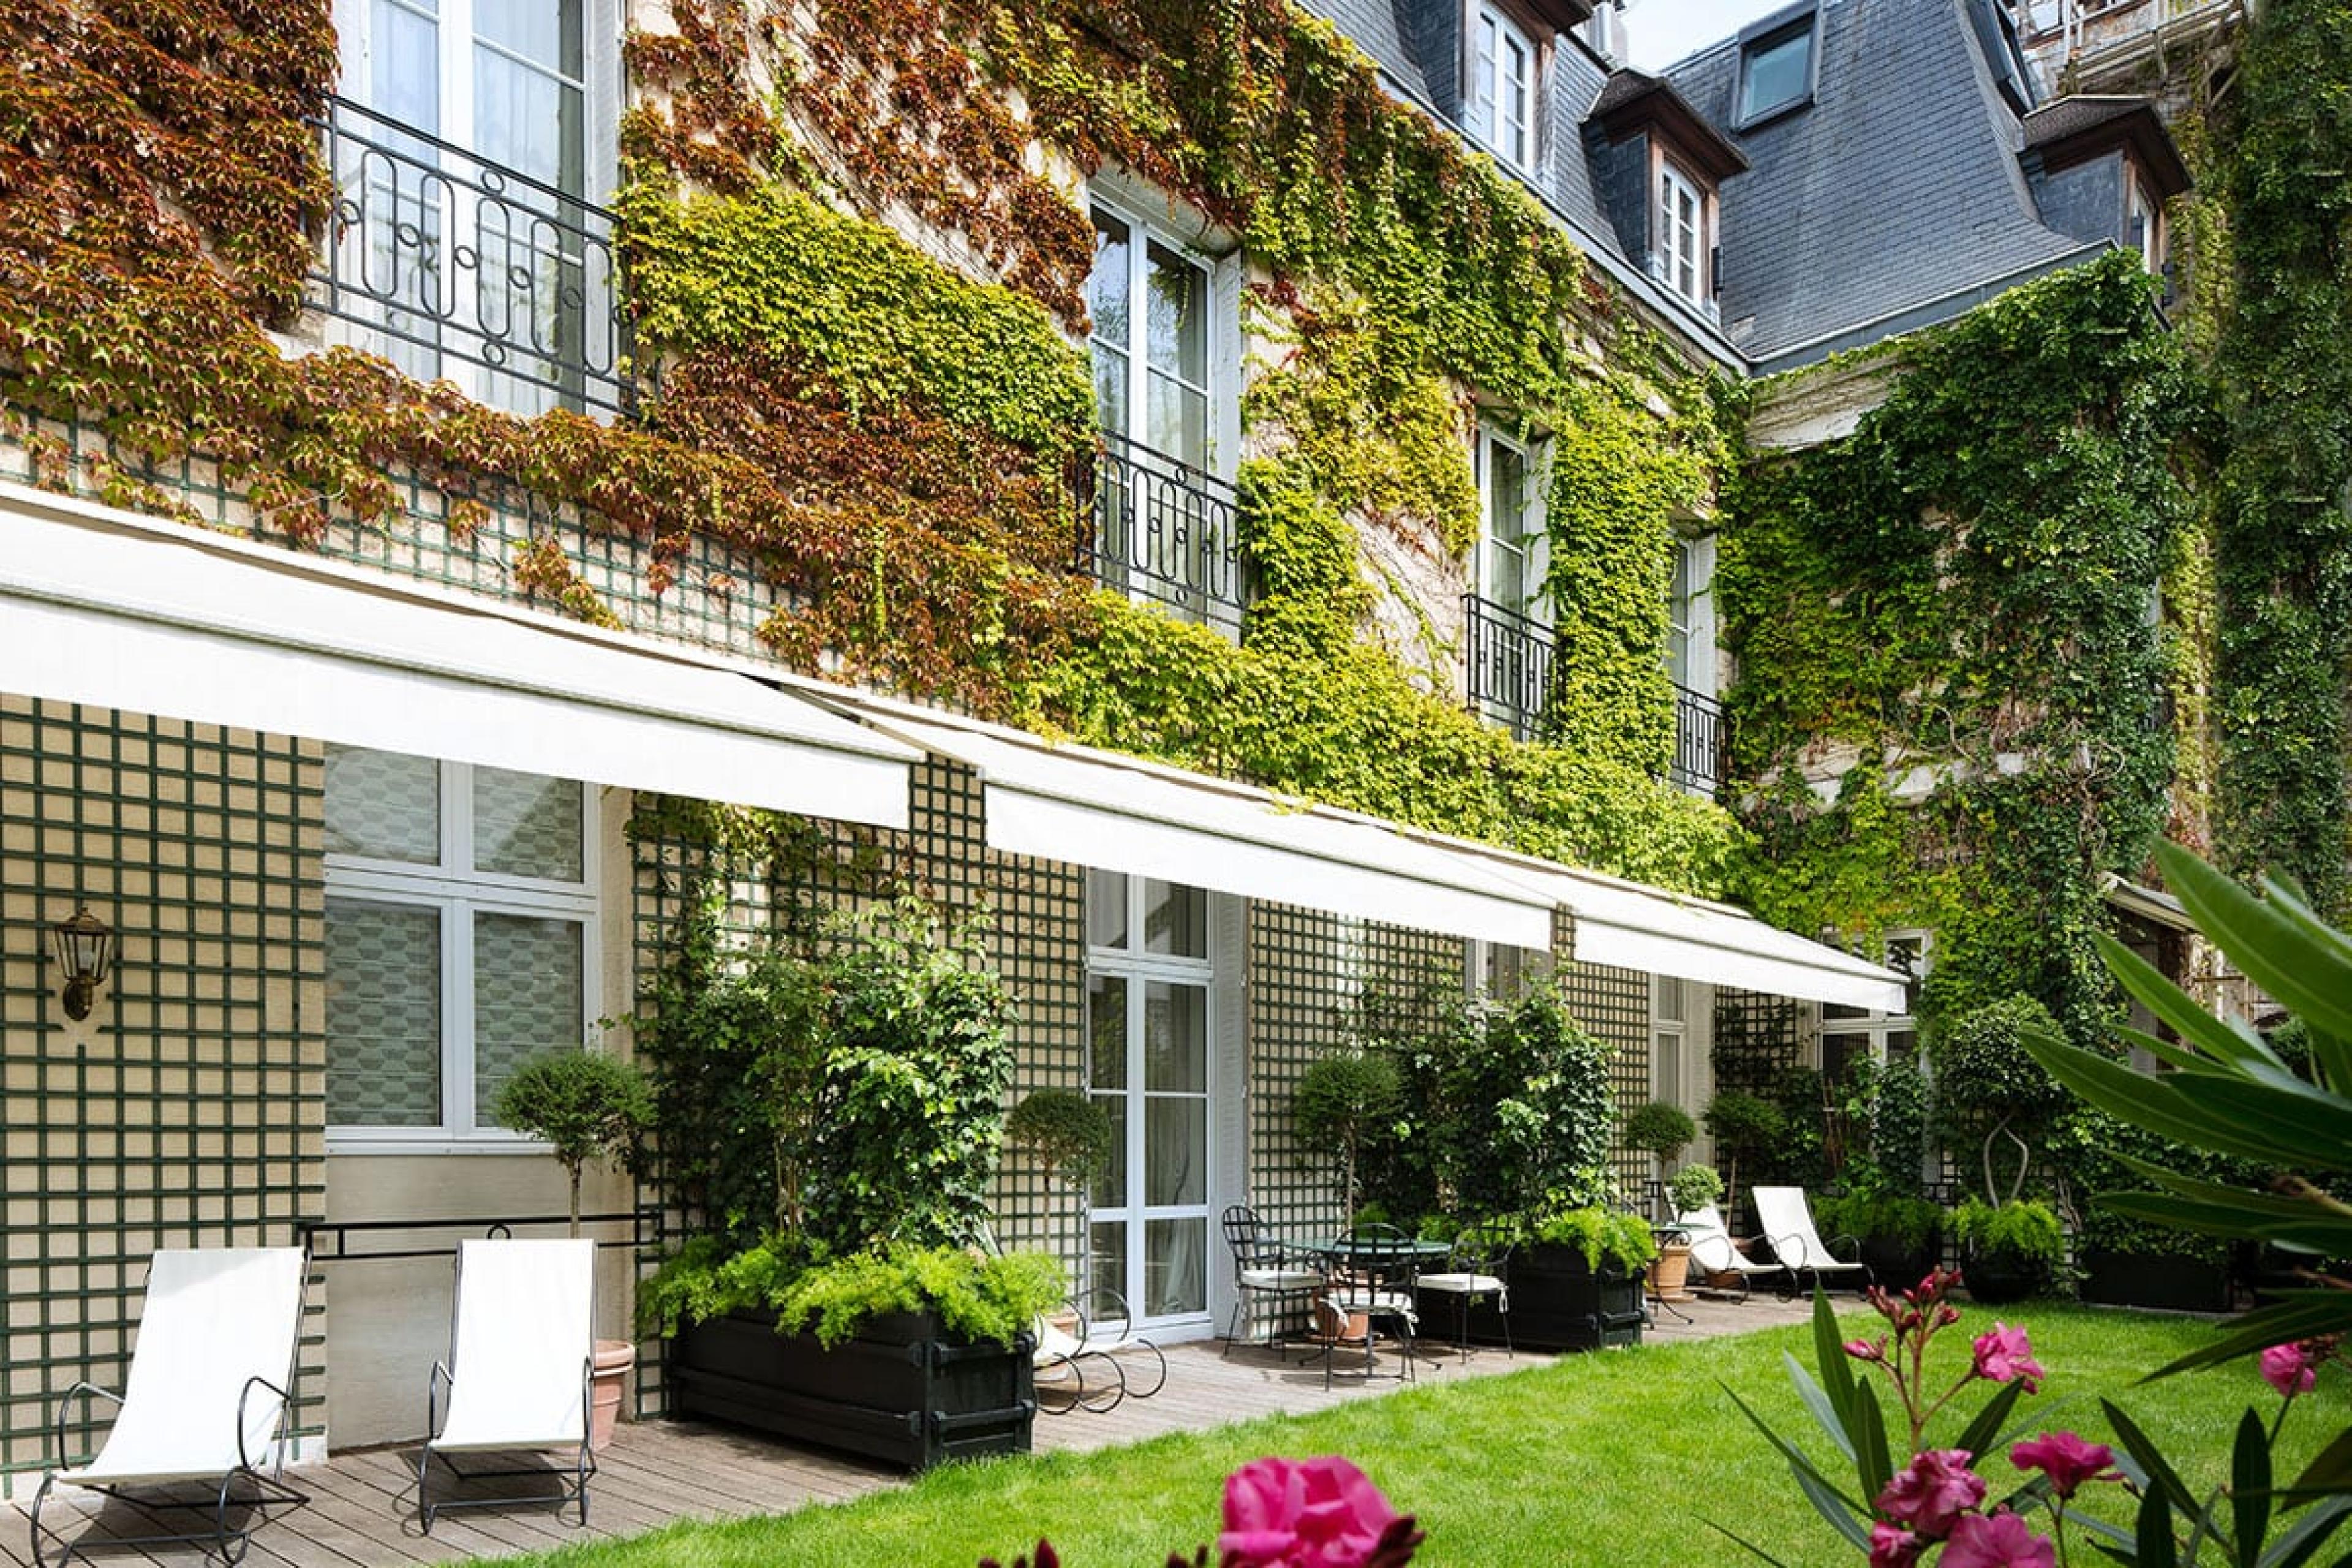 Hôtel Relais Saint Germain — Hotel Review